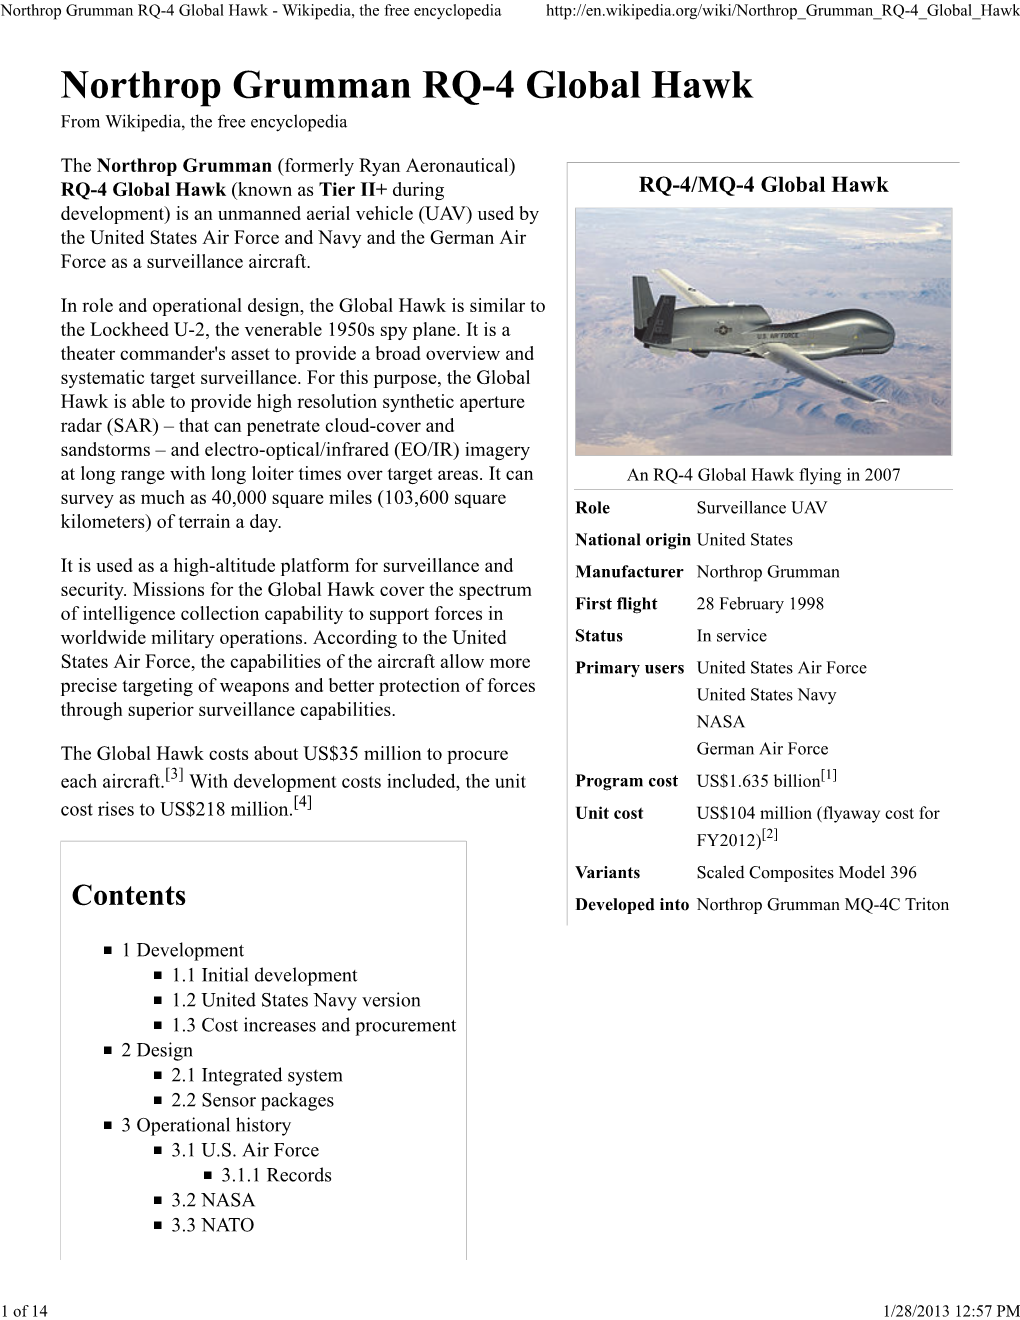 RQ-4/MQ-4 Global Hawk